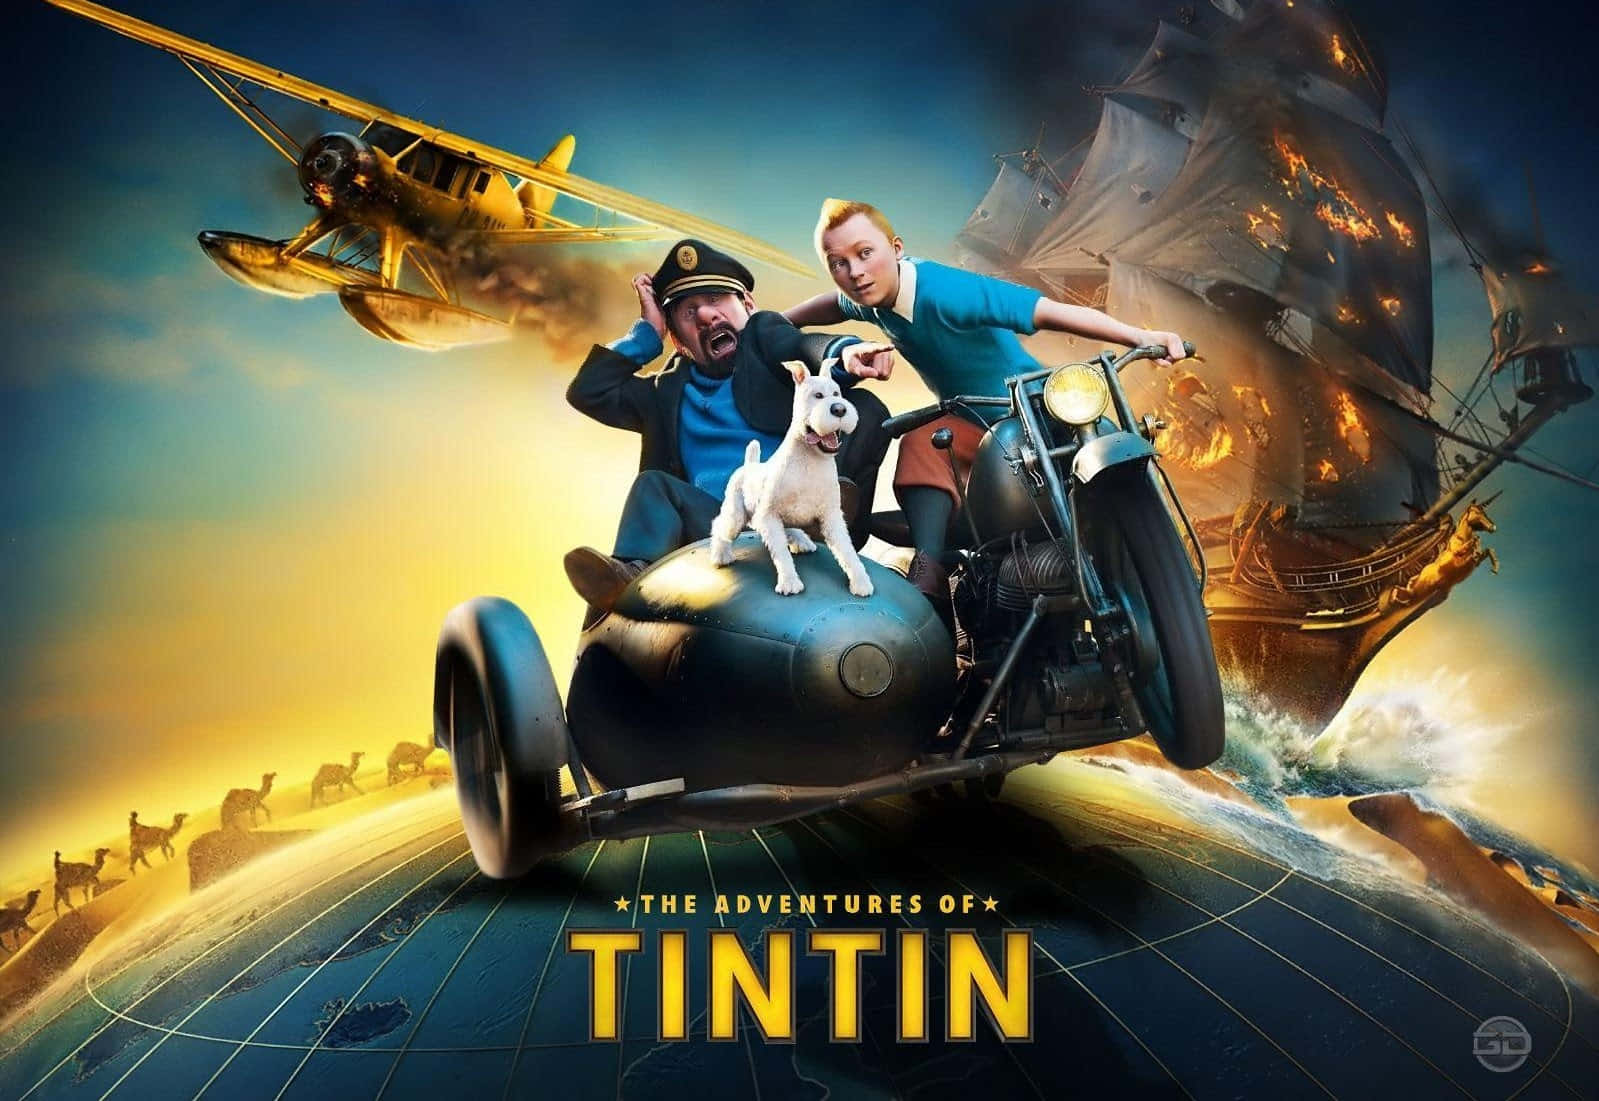 Leavventure Di Tintin Promozione Del Film. Sfondo